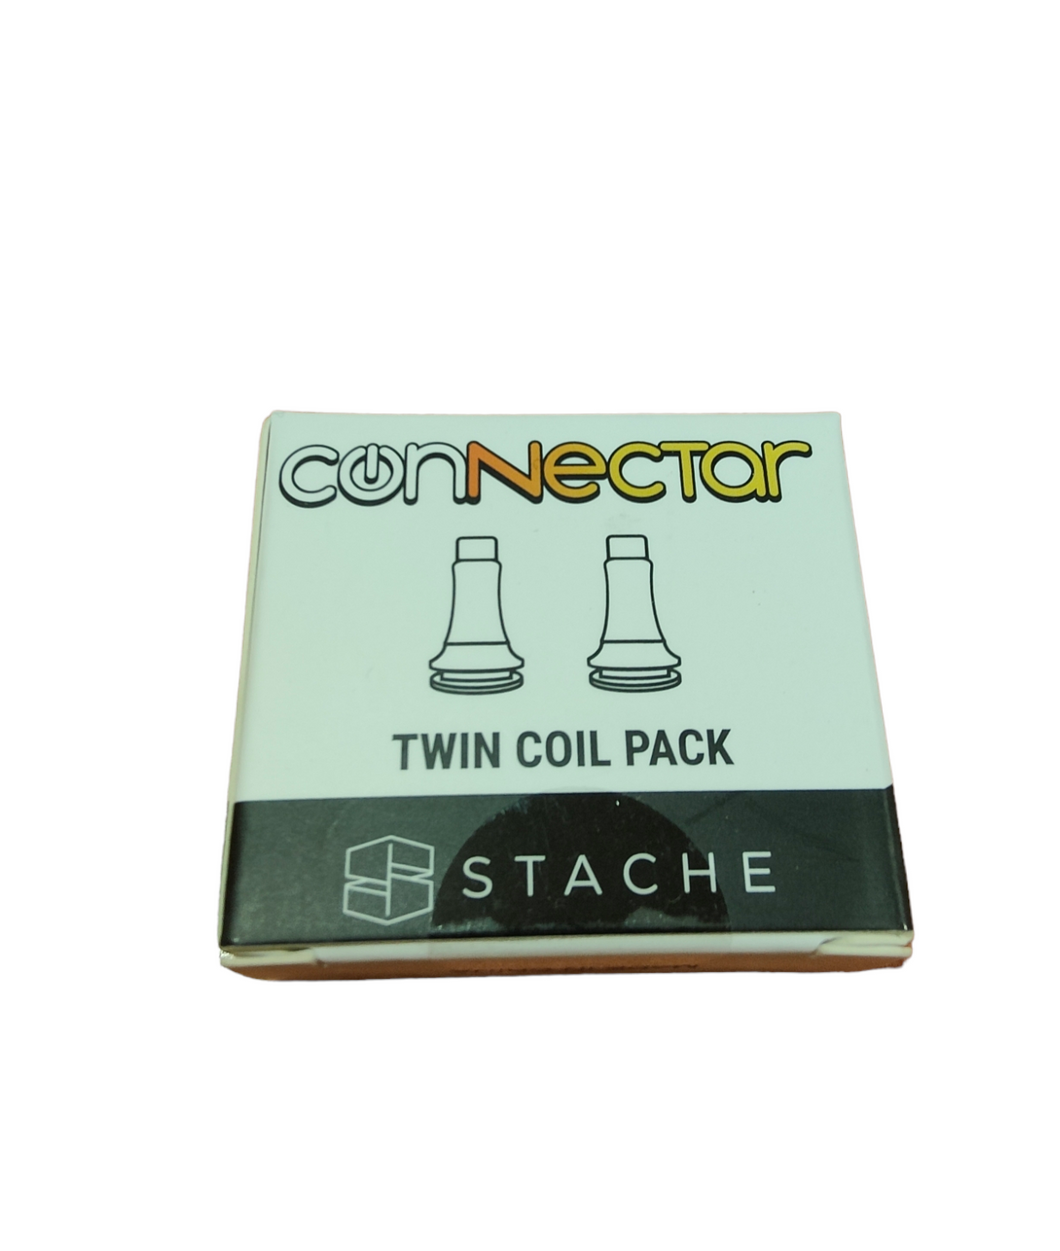 Résistance quartz pour connectar Twin coil pack